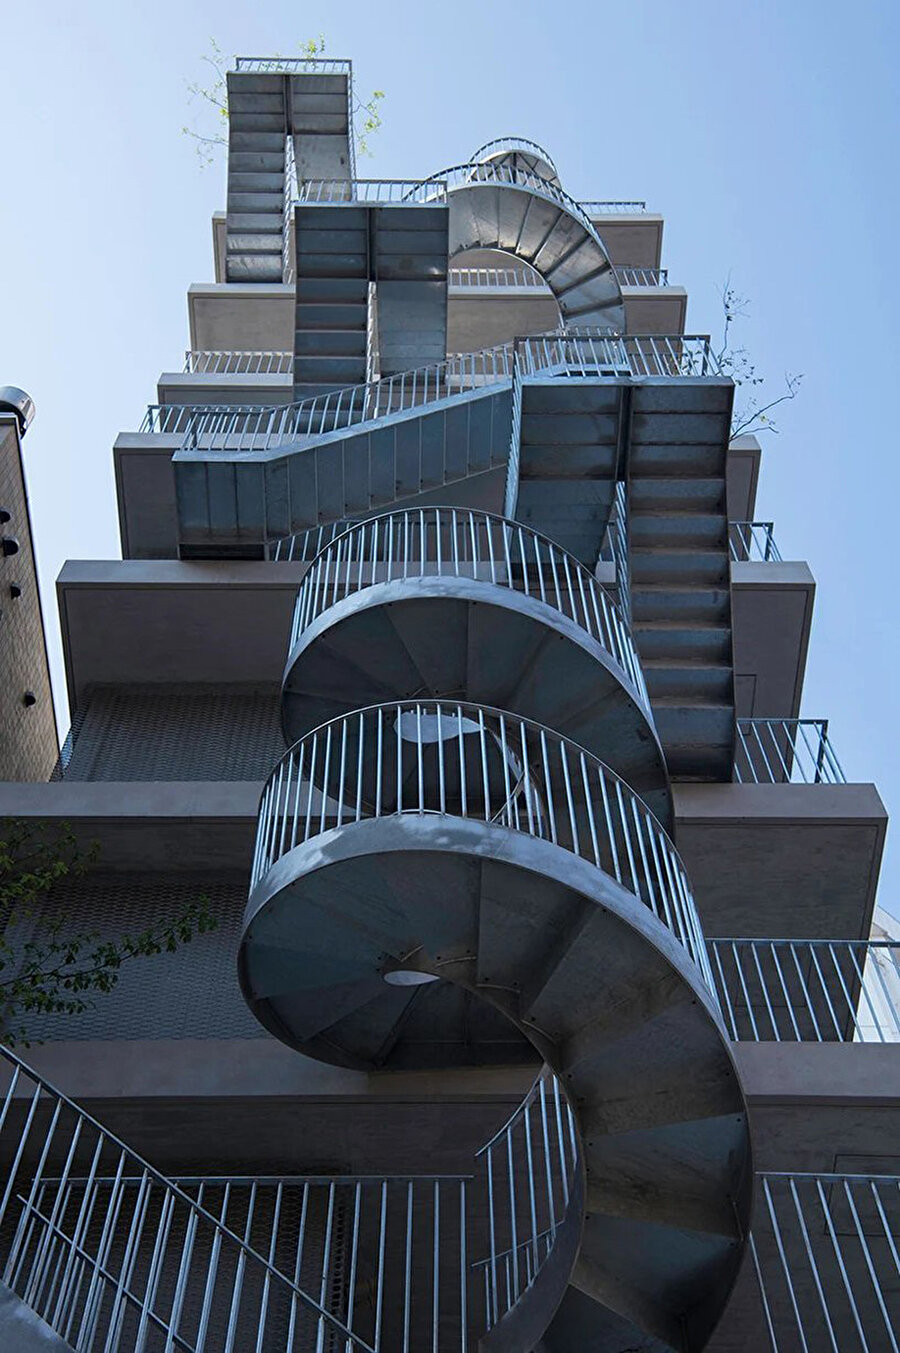 Doğrudan sokağa bağlanan karakteristik merdivenlerle her katta yer alan teraslar, binanın dikkat çeken özelliklerinden birkaçı. 